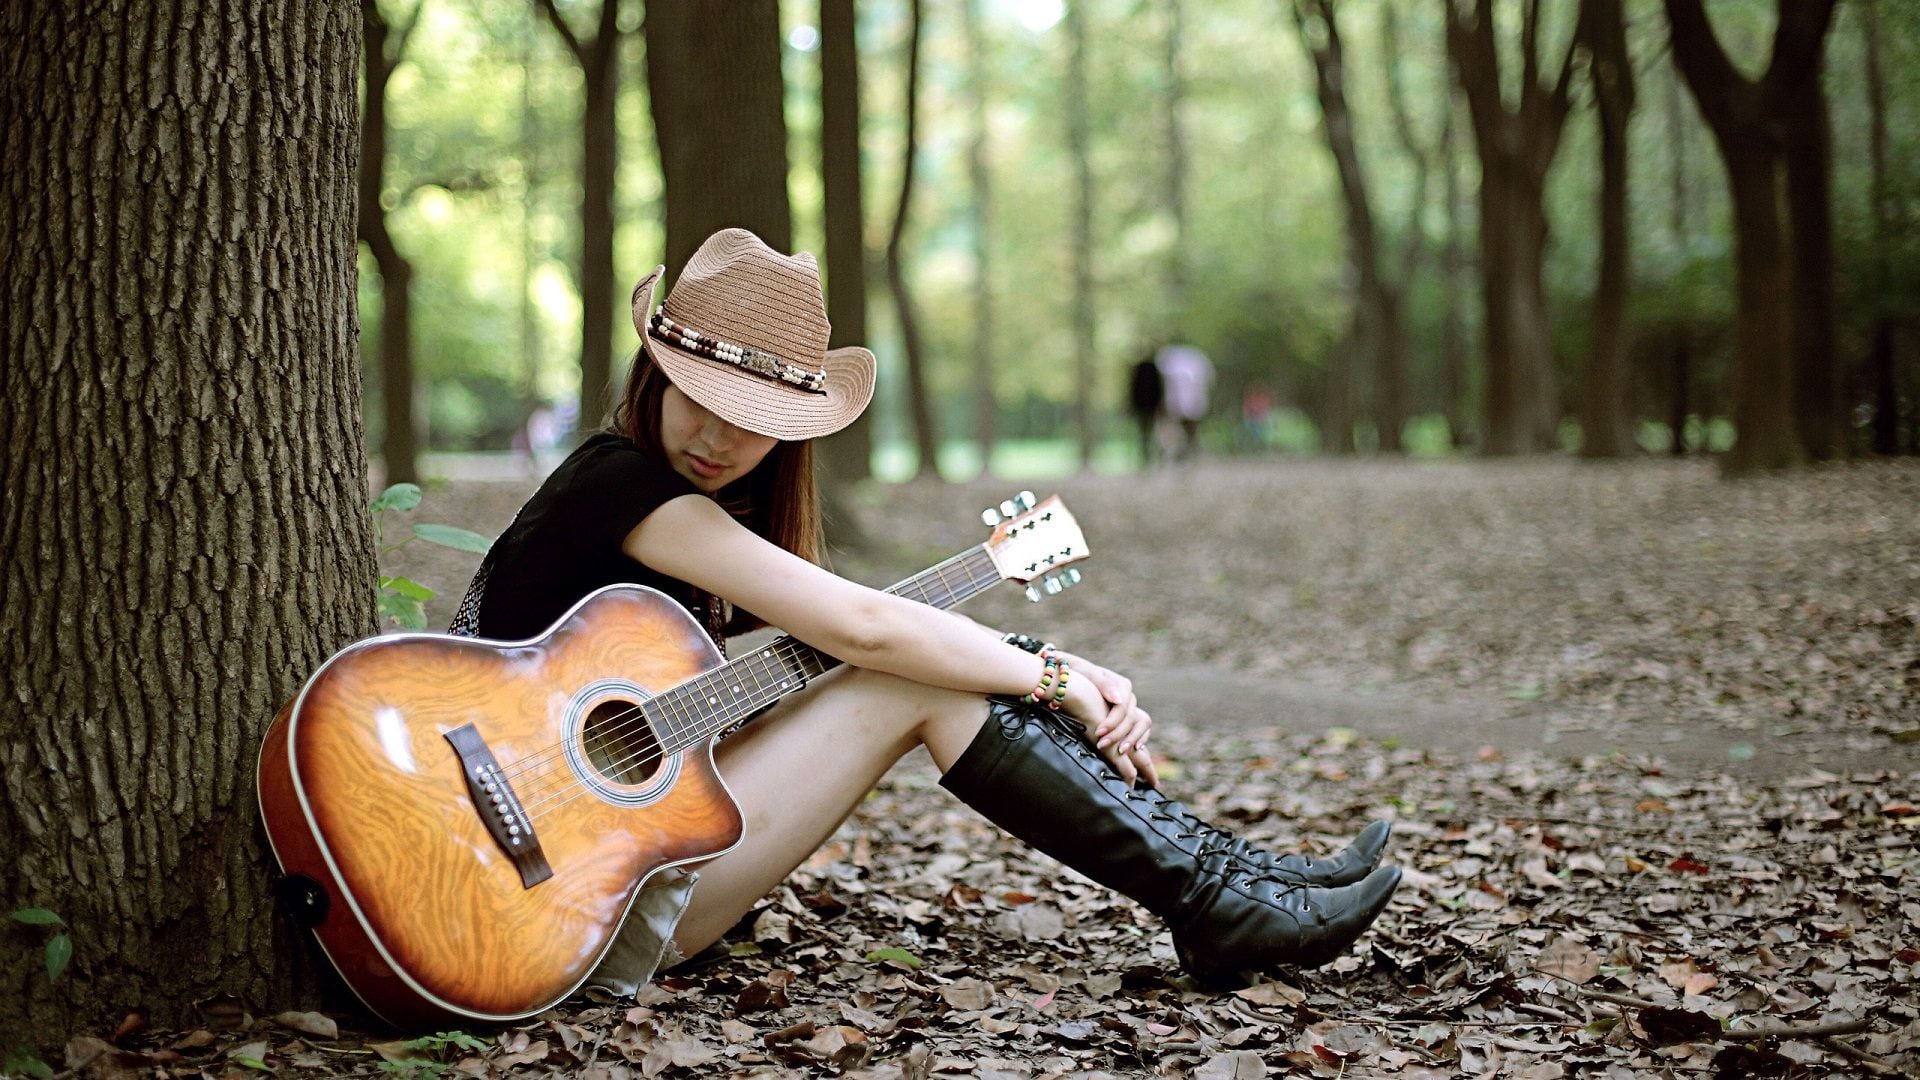 fond d'écran de fille avec guitare,guitare,arbre,musicien,instrument de musique,instruments à cordes pincées